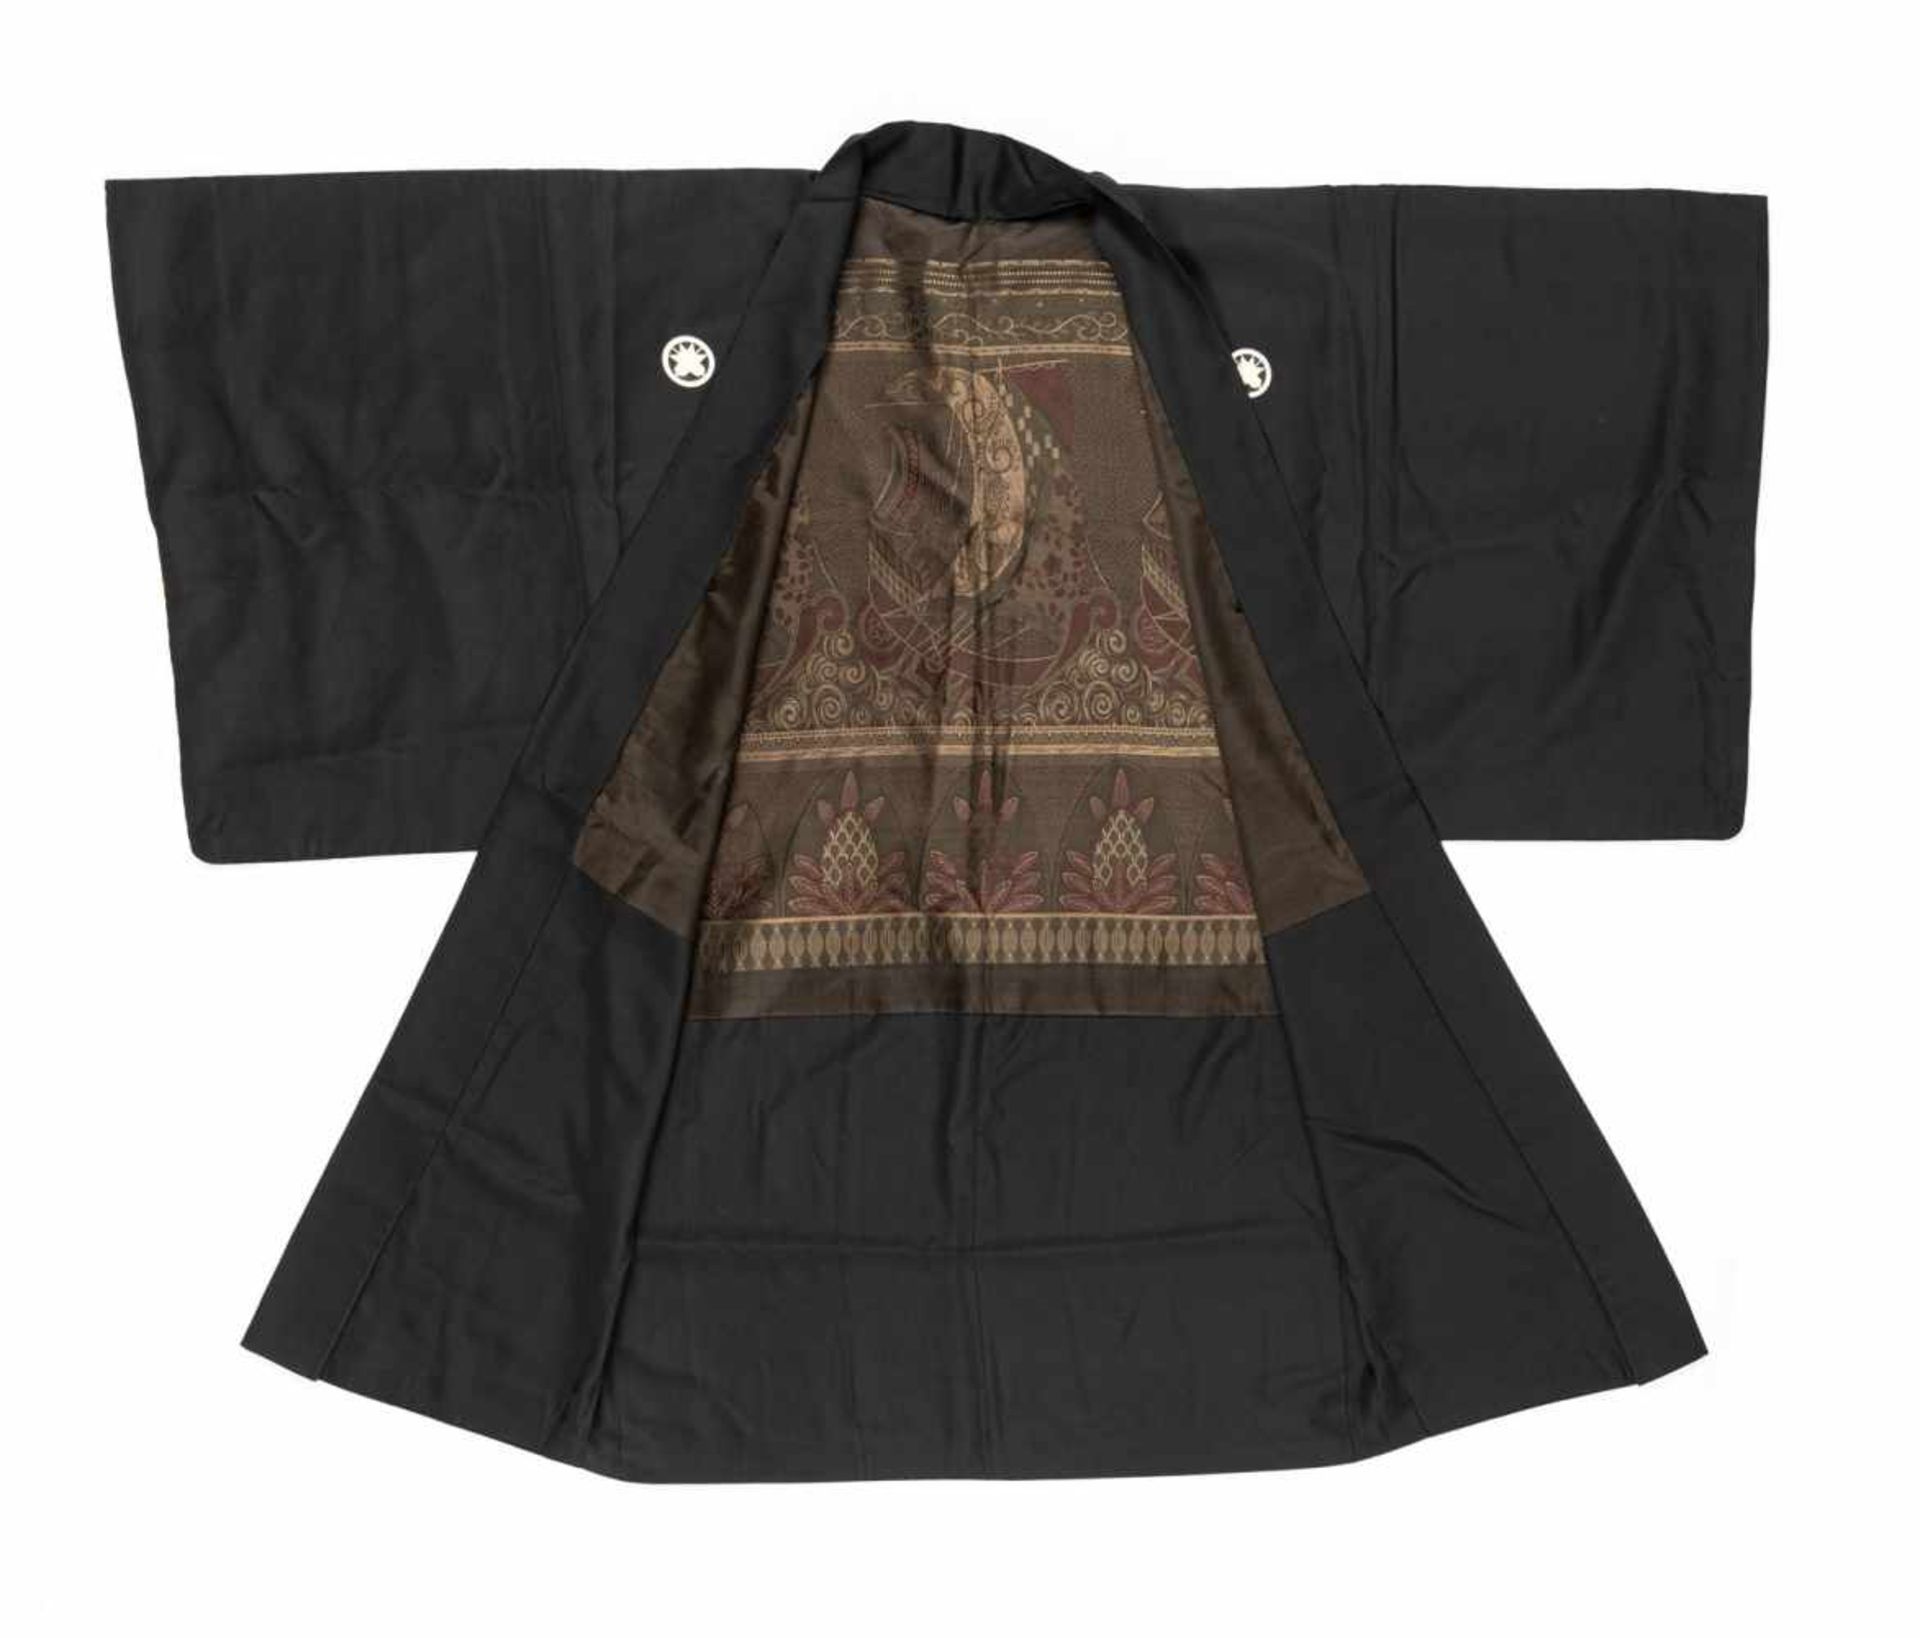 Drei Kimono mit Wappen, Schwerthülle, Hose teils in Seidenbrokat und Seide gearbeitet - Bild 11 aus 16